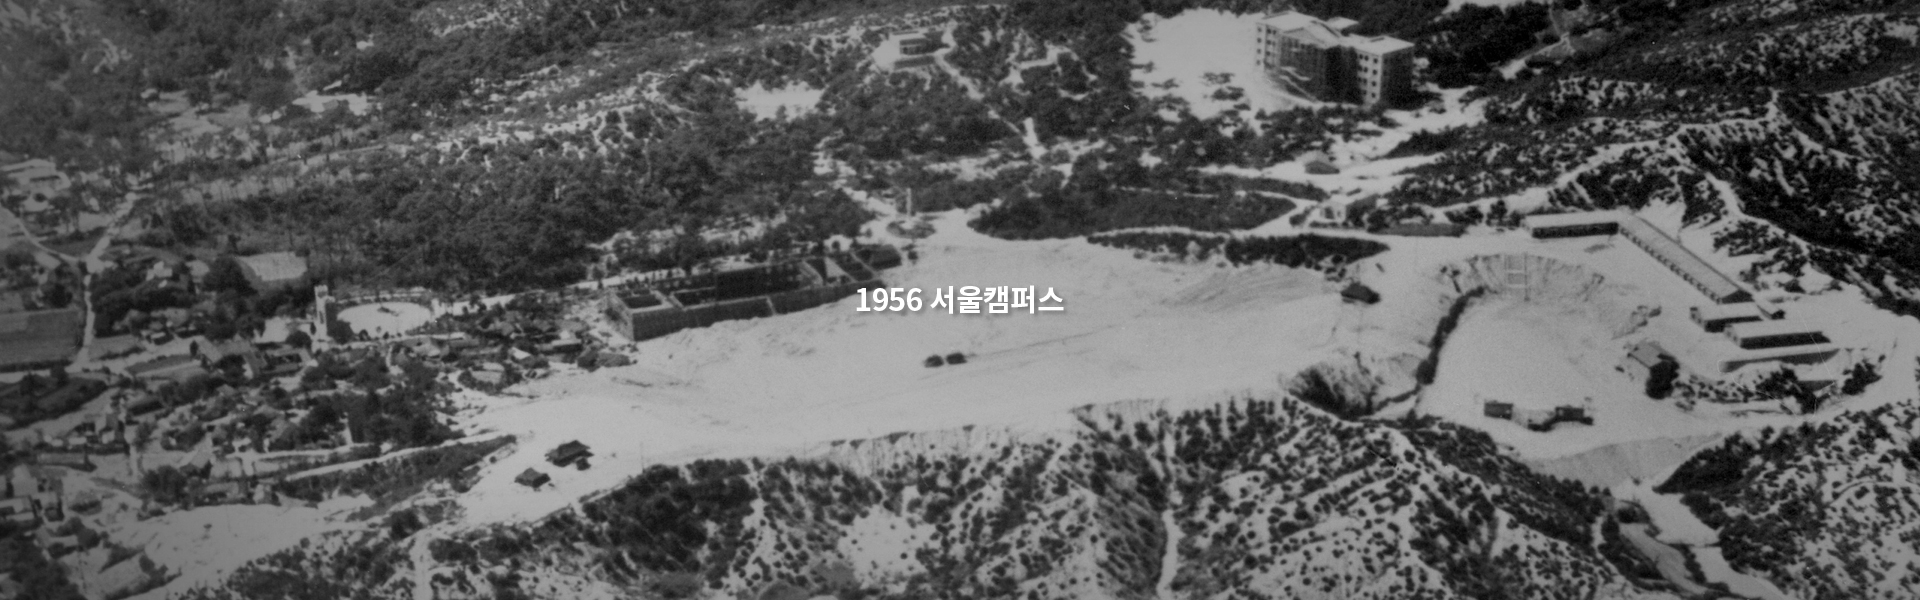 1956 서울캠퍼스